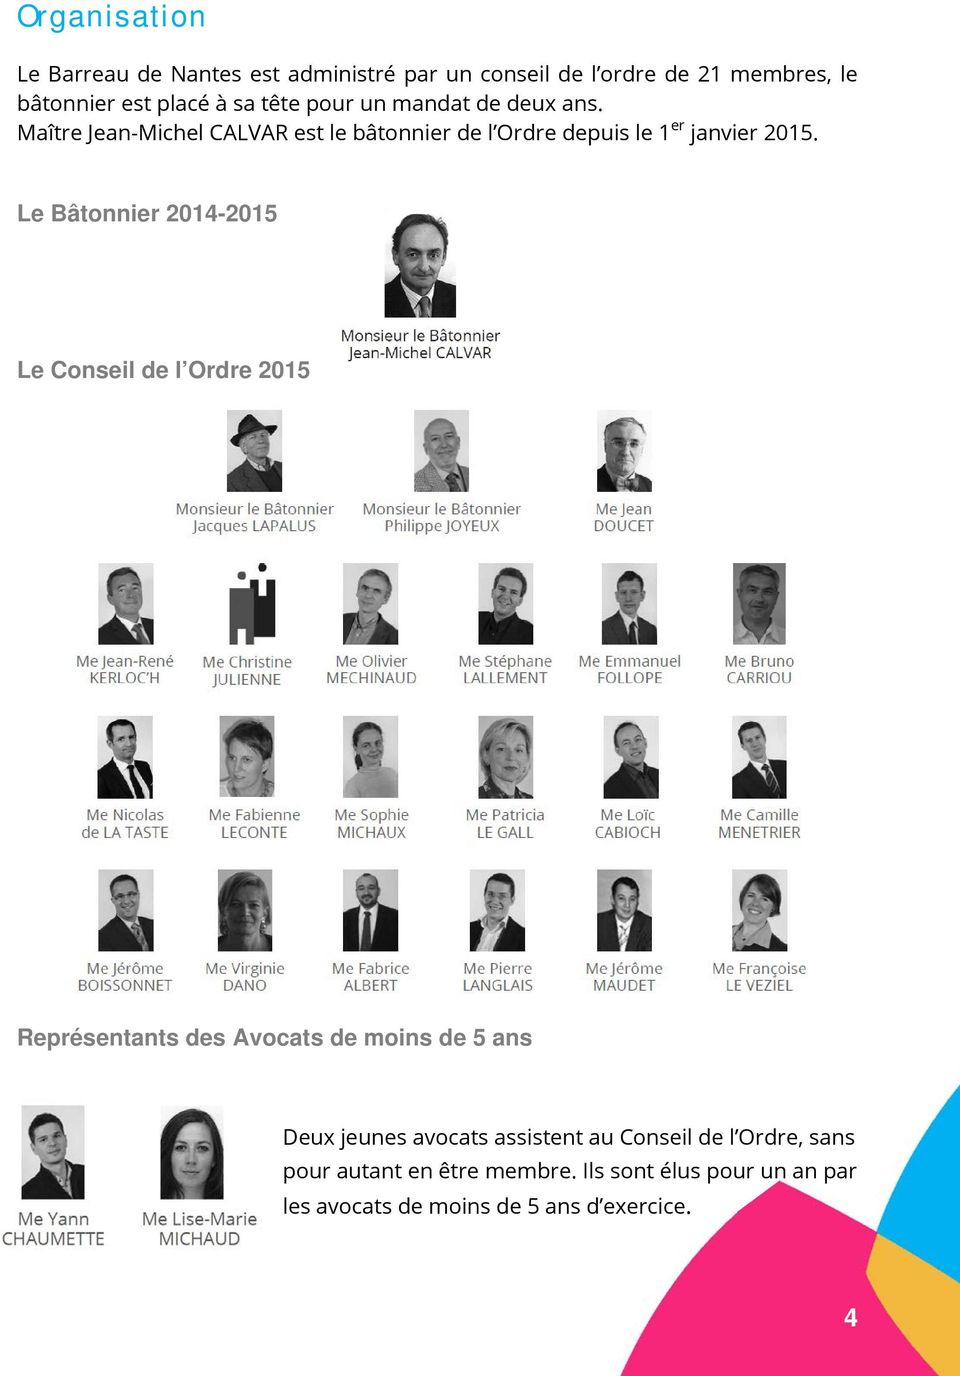 Le Bâtonnier 2014-2015 Le Conseil de l Ordre 2015 Représentants des Avocats de moins de 5 ans Deux jeunes avocats